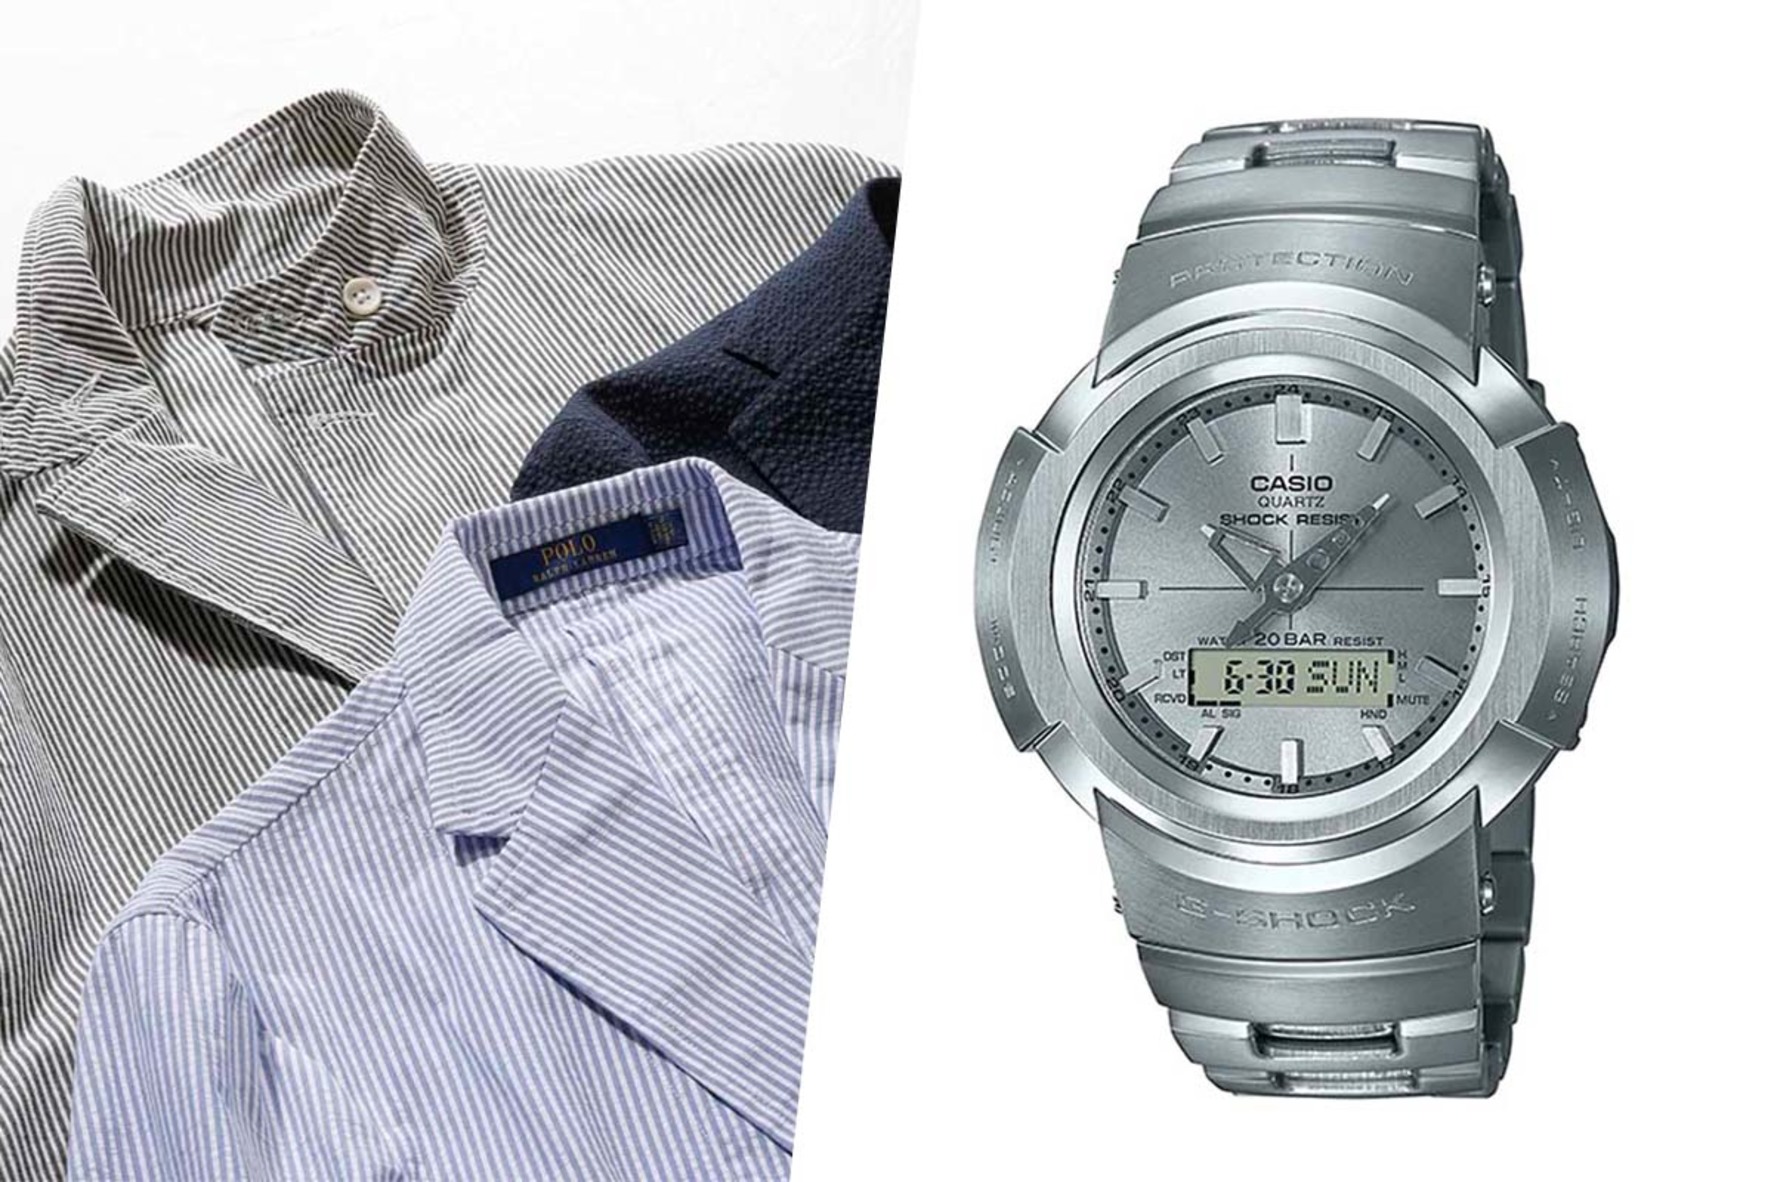 G Shock 大人メンズがスーツに合わせるべき ビジネス向きの腕時計 Forza Style ファッション ライフスタイル フォルツァスタイル